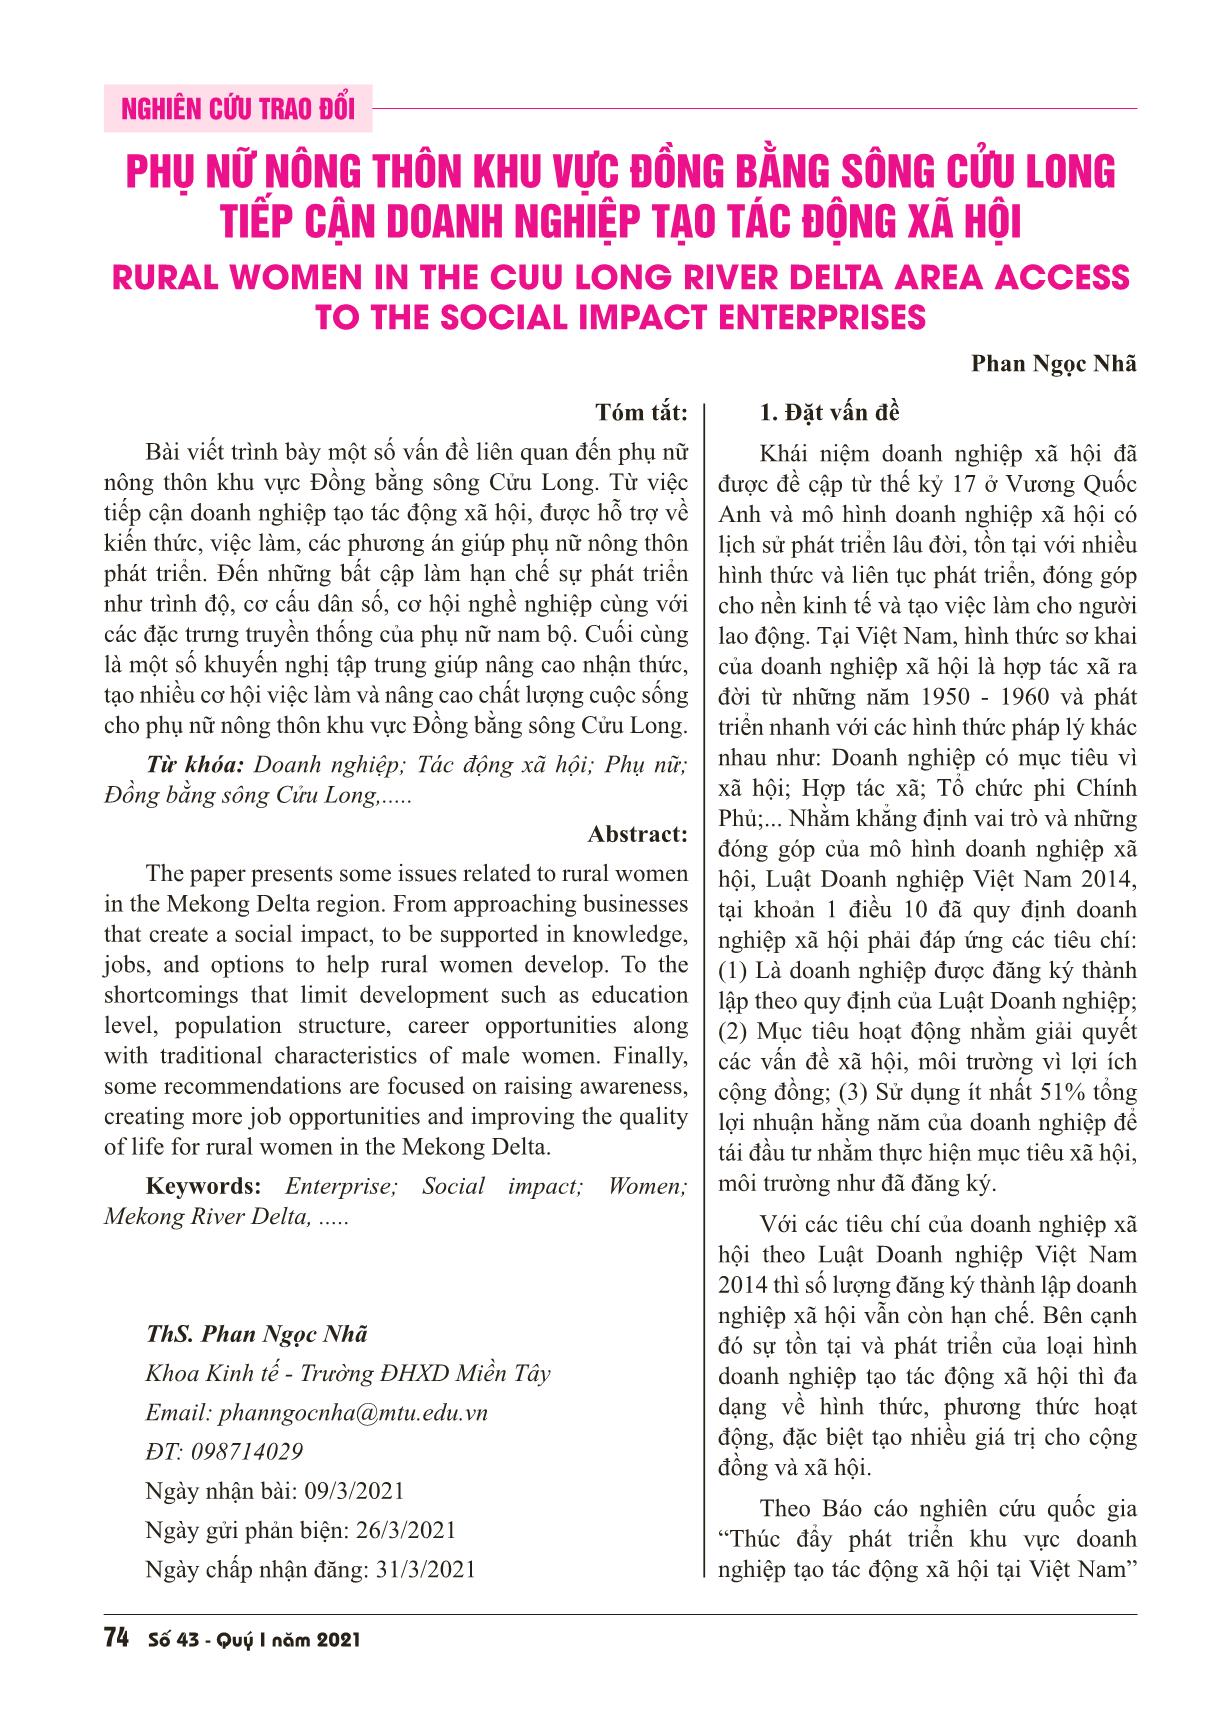 Phụ nữ nông thôn khu vực Đồng bằng sông Cửu Long tiếp cận doanh nghiệp tạo tác động xã hội trang 1